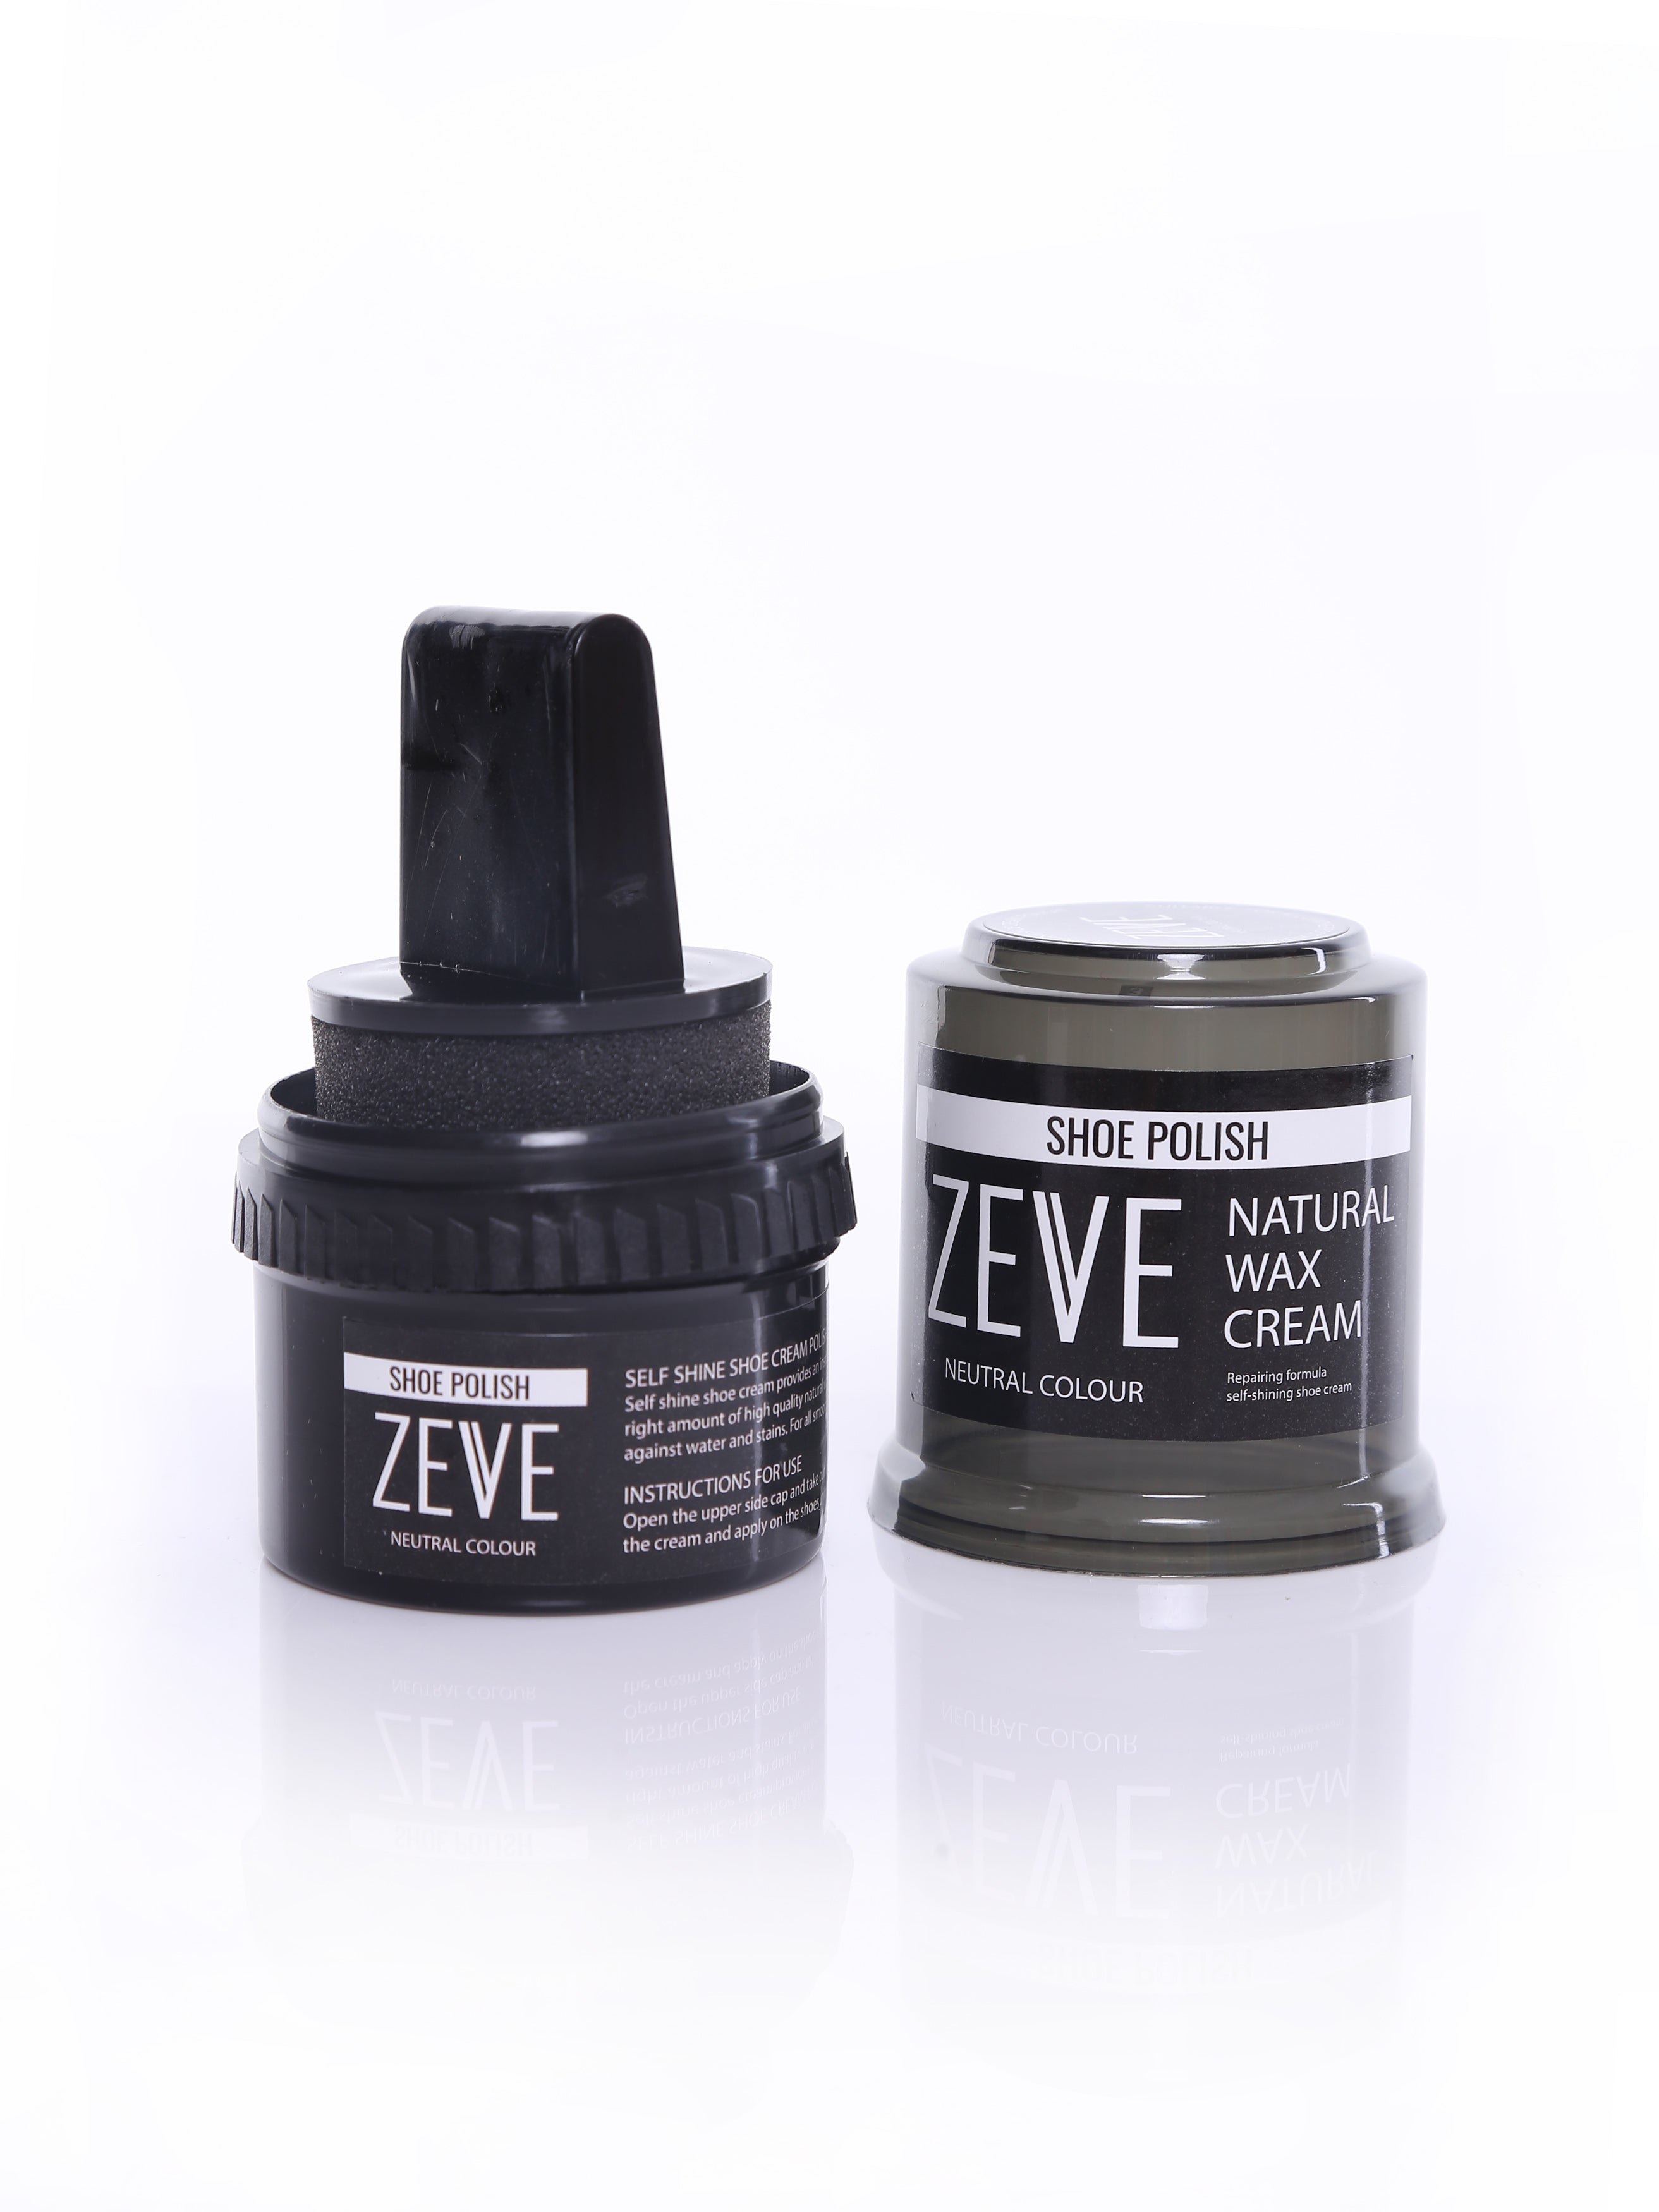 Shoe Polish Natural Wax Cream (Neutral Colour) - Zeve Shoes